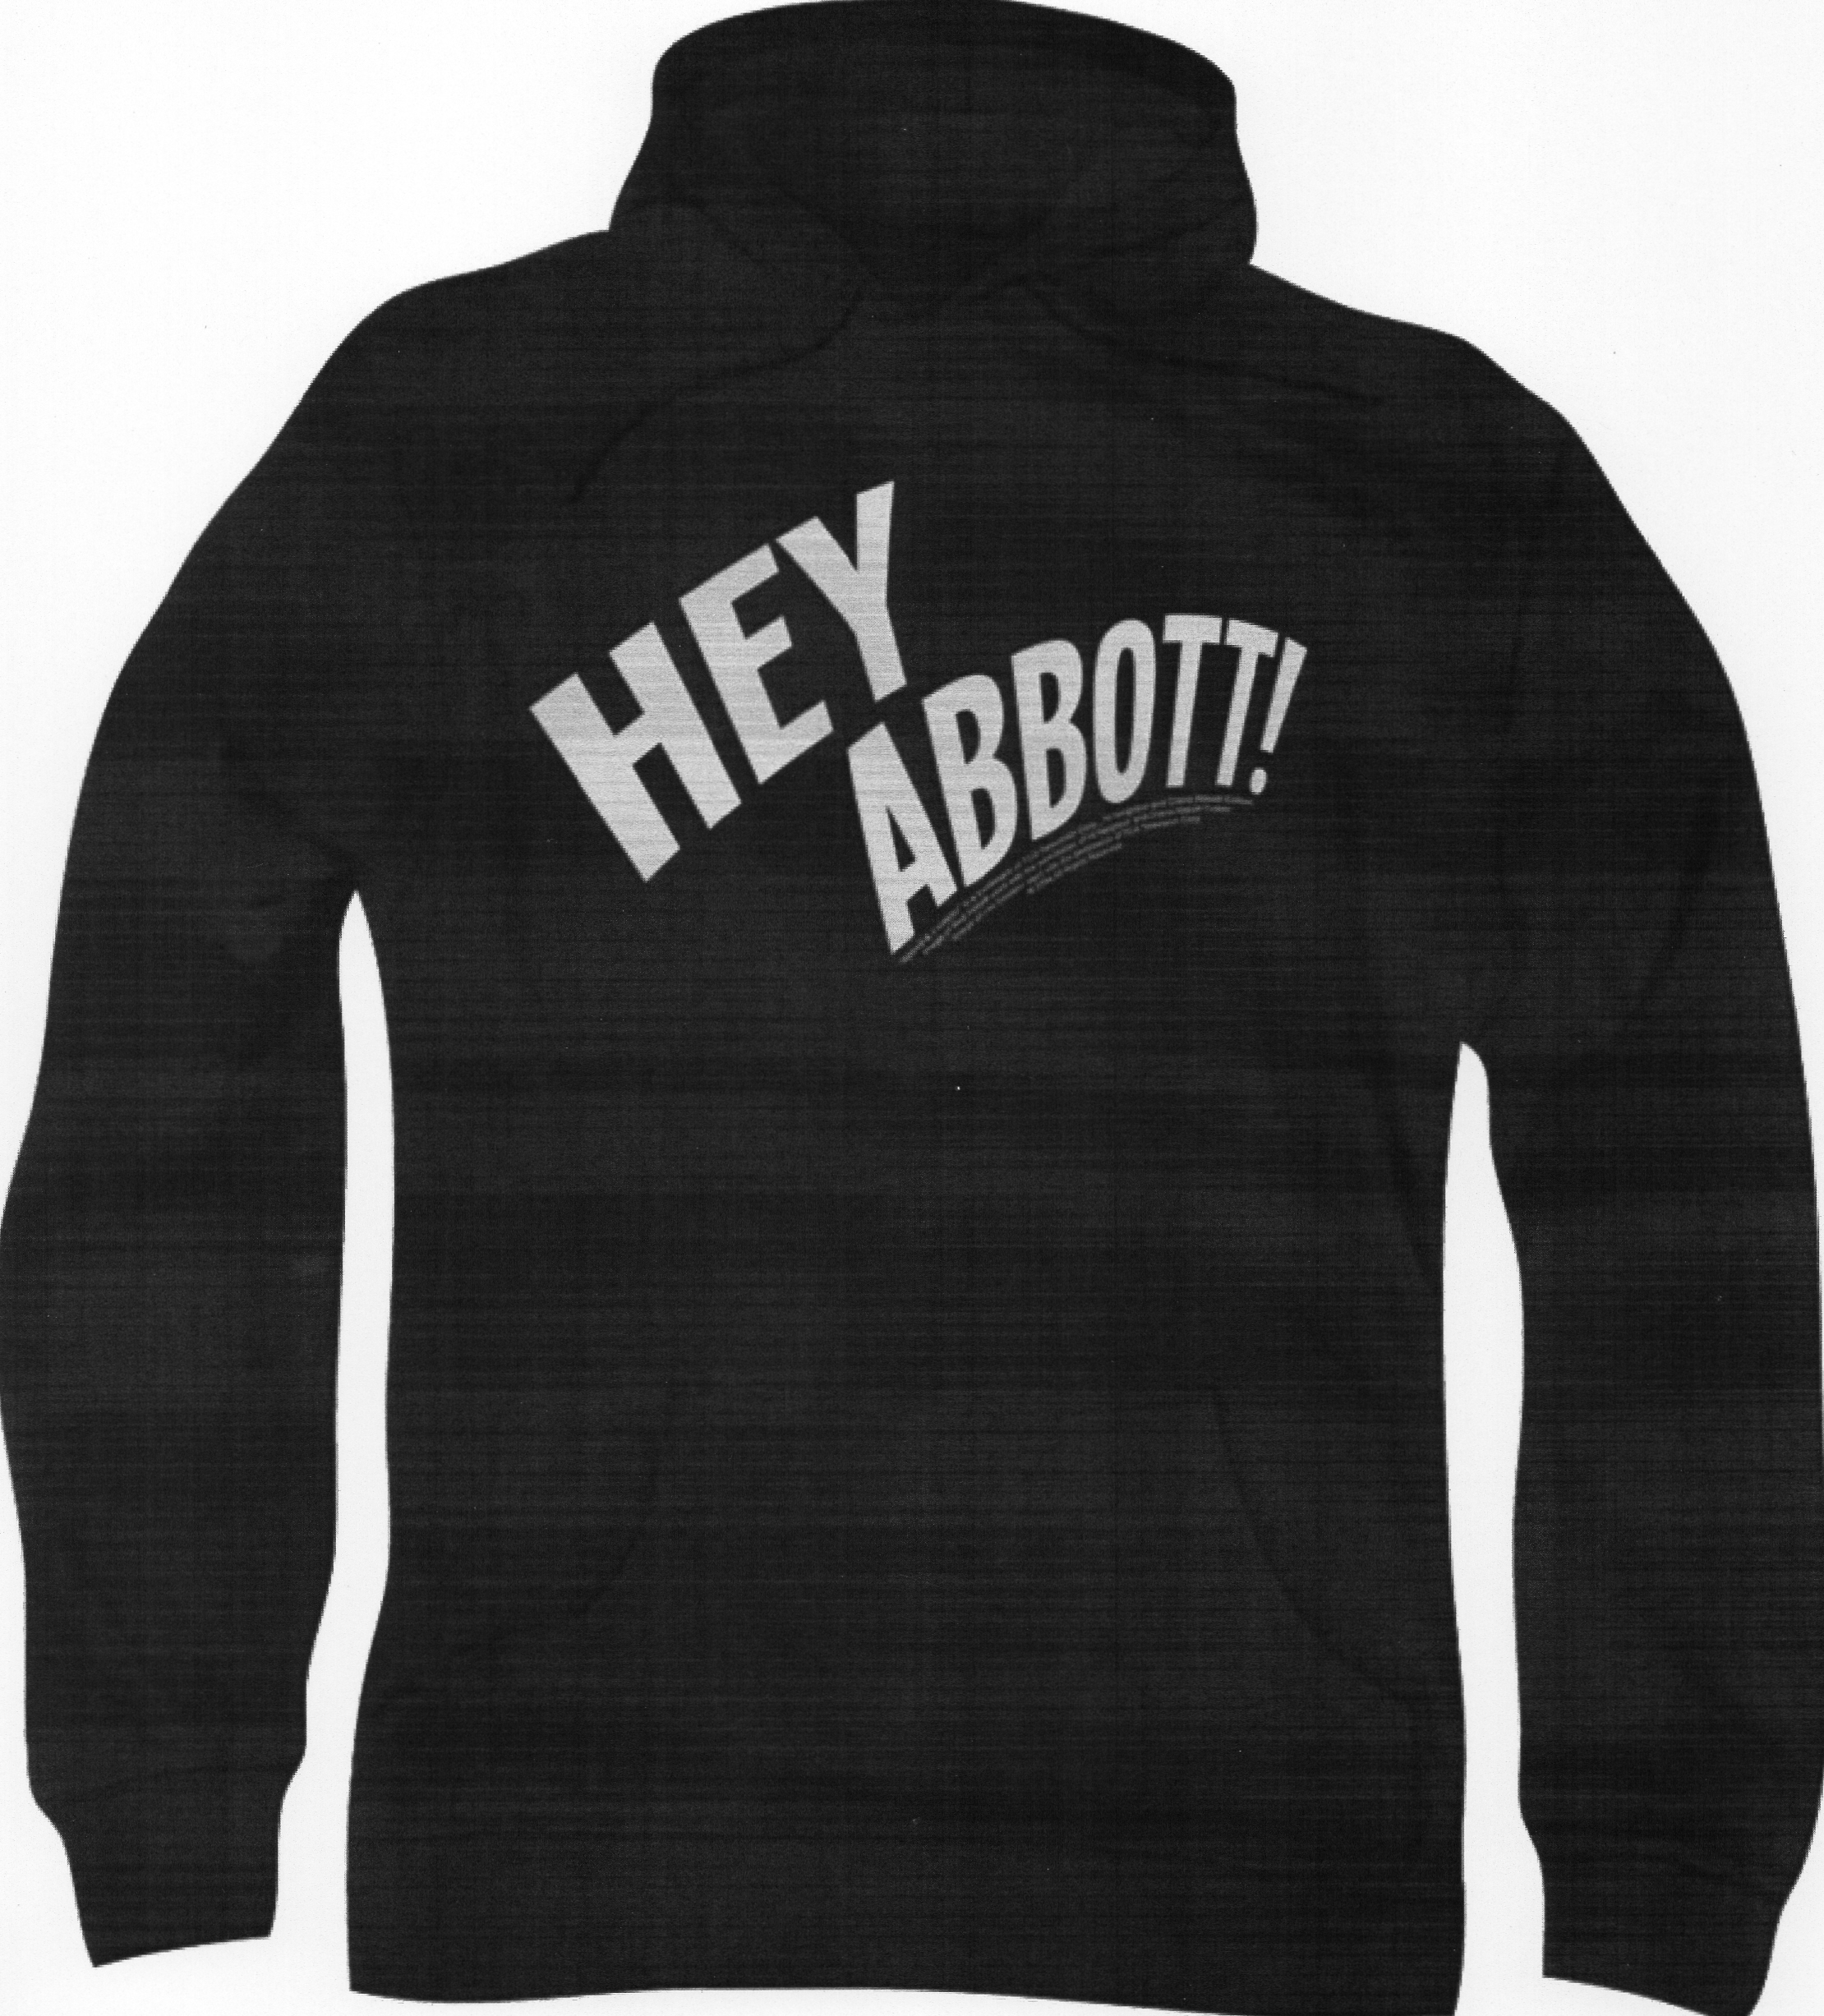 Hey Abbott! Pull-Over Hoodie